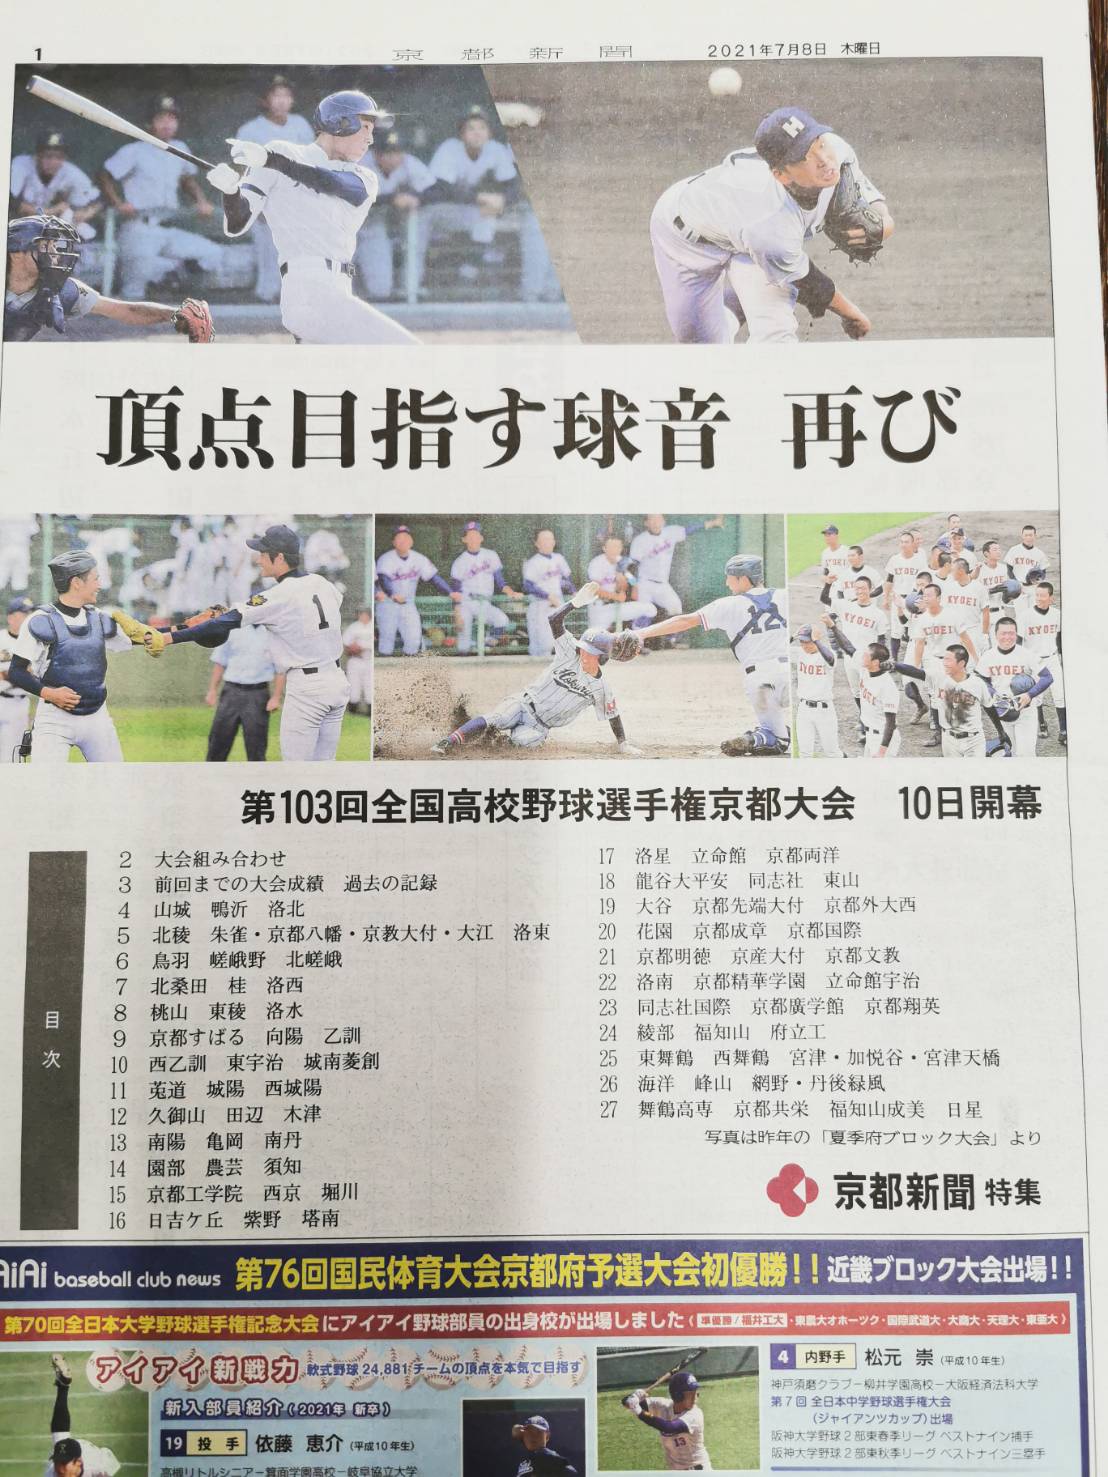 2021年度第103回全国高校野球選手権京都大会京都新聞タブロイド紙一面